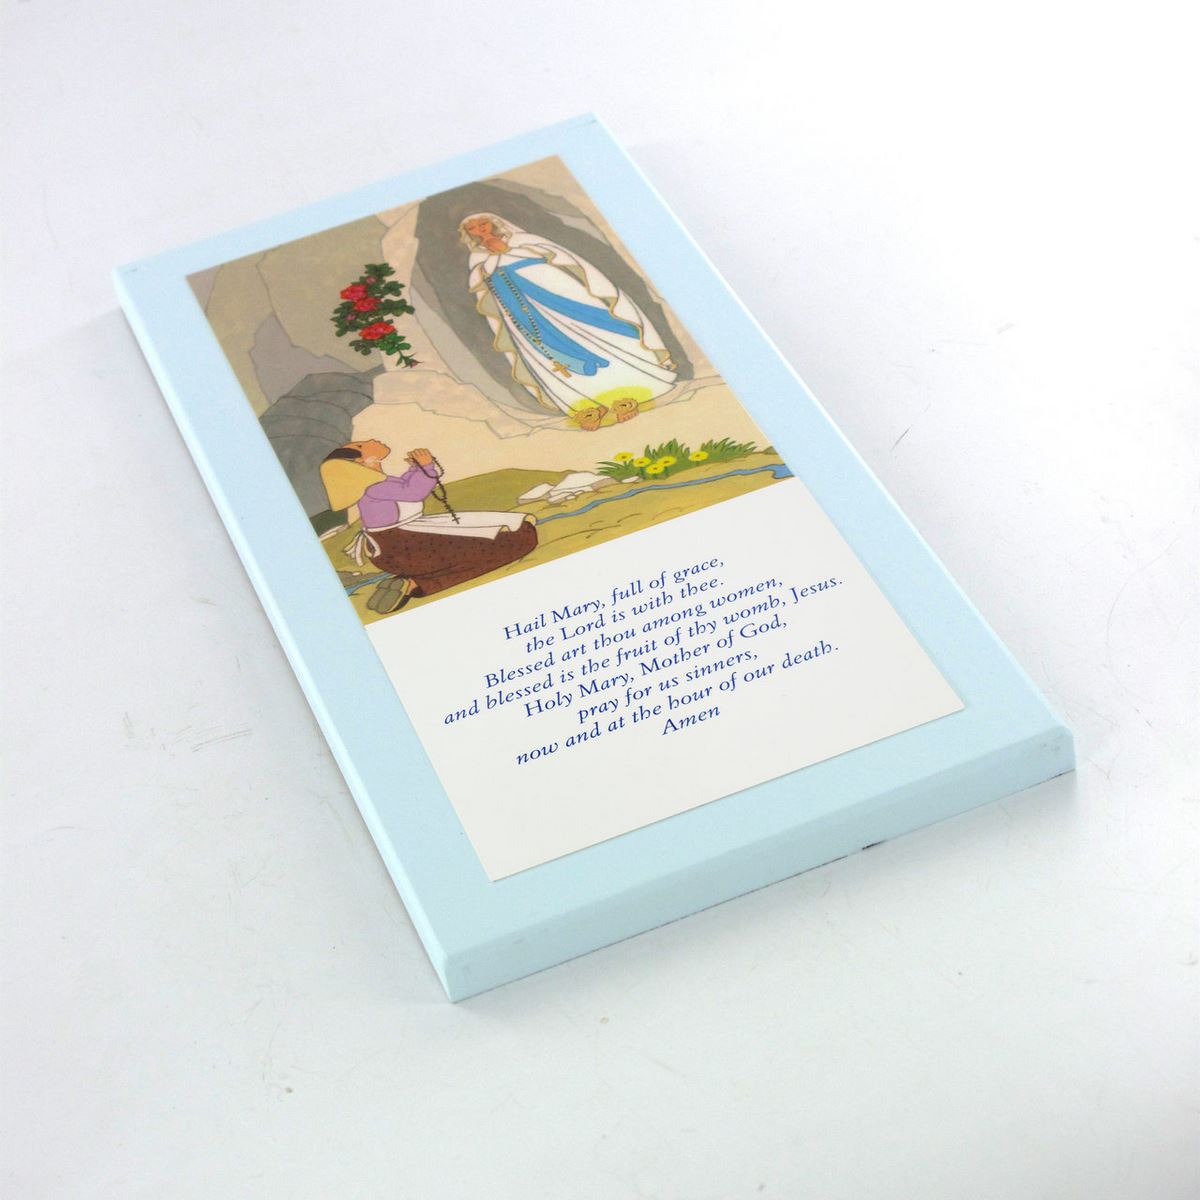 tavola lourdes con preghiera ave maria in inglese su legno azzurro - 26 x 12,5 cm   